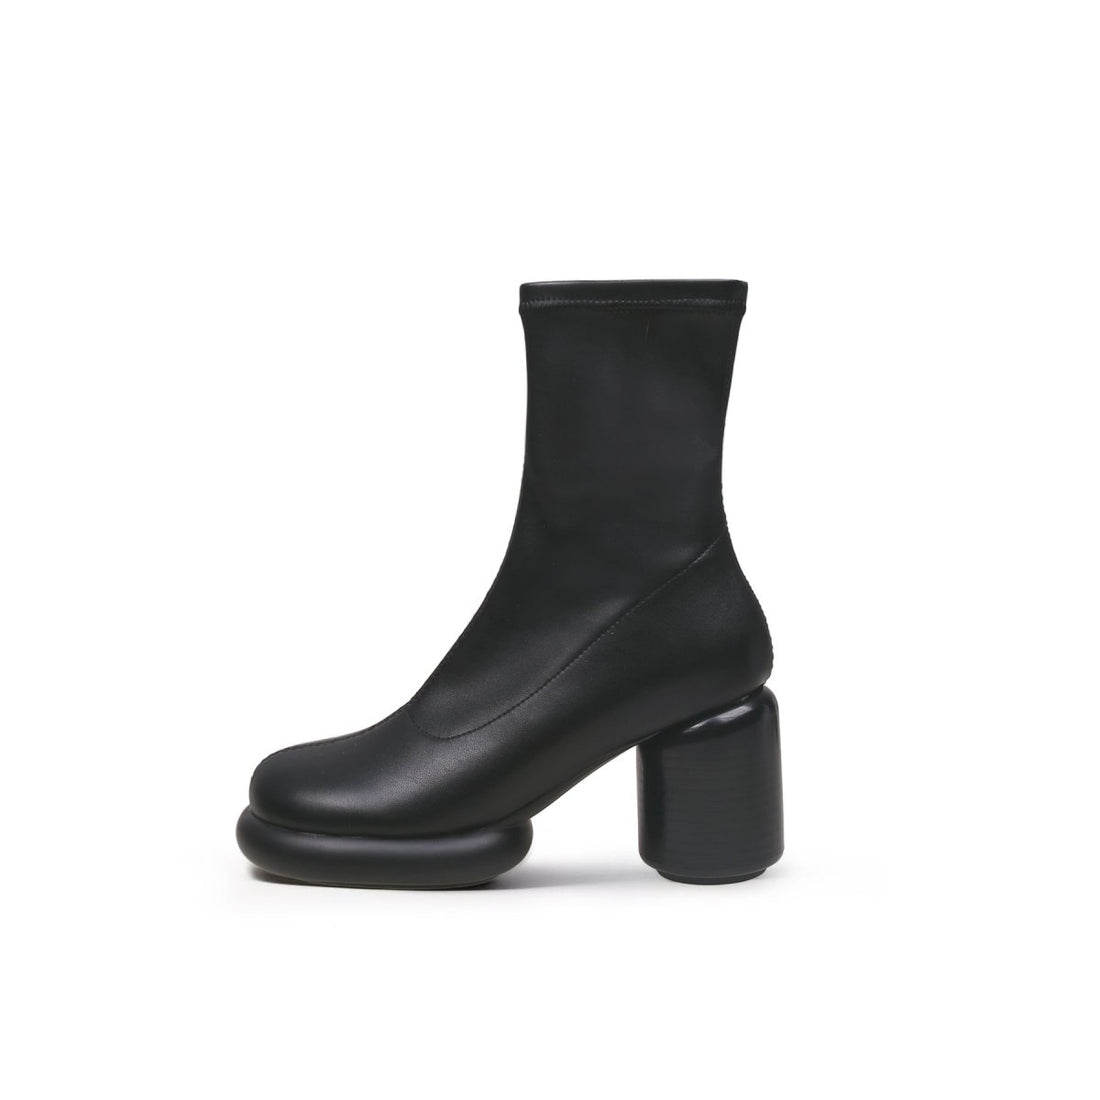 Cylinder Base Sock Black Boots - 0cm